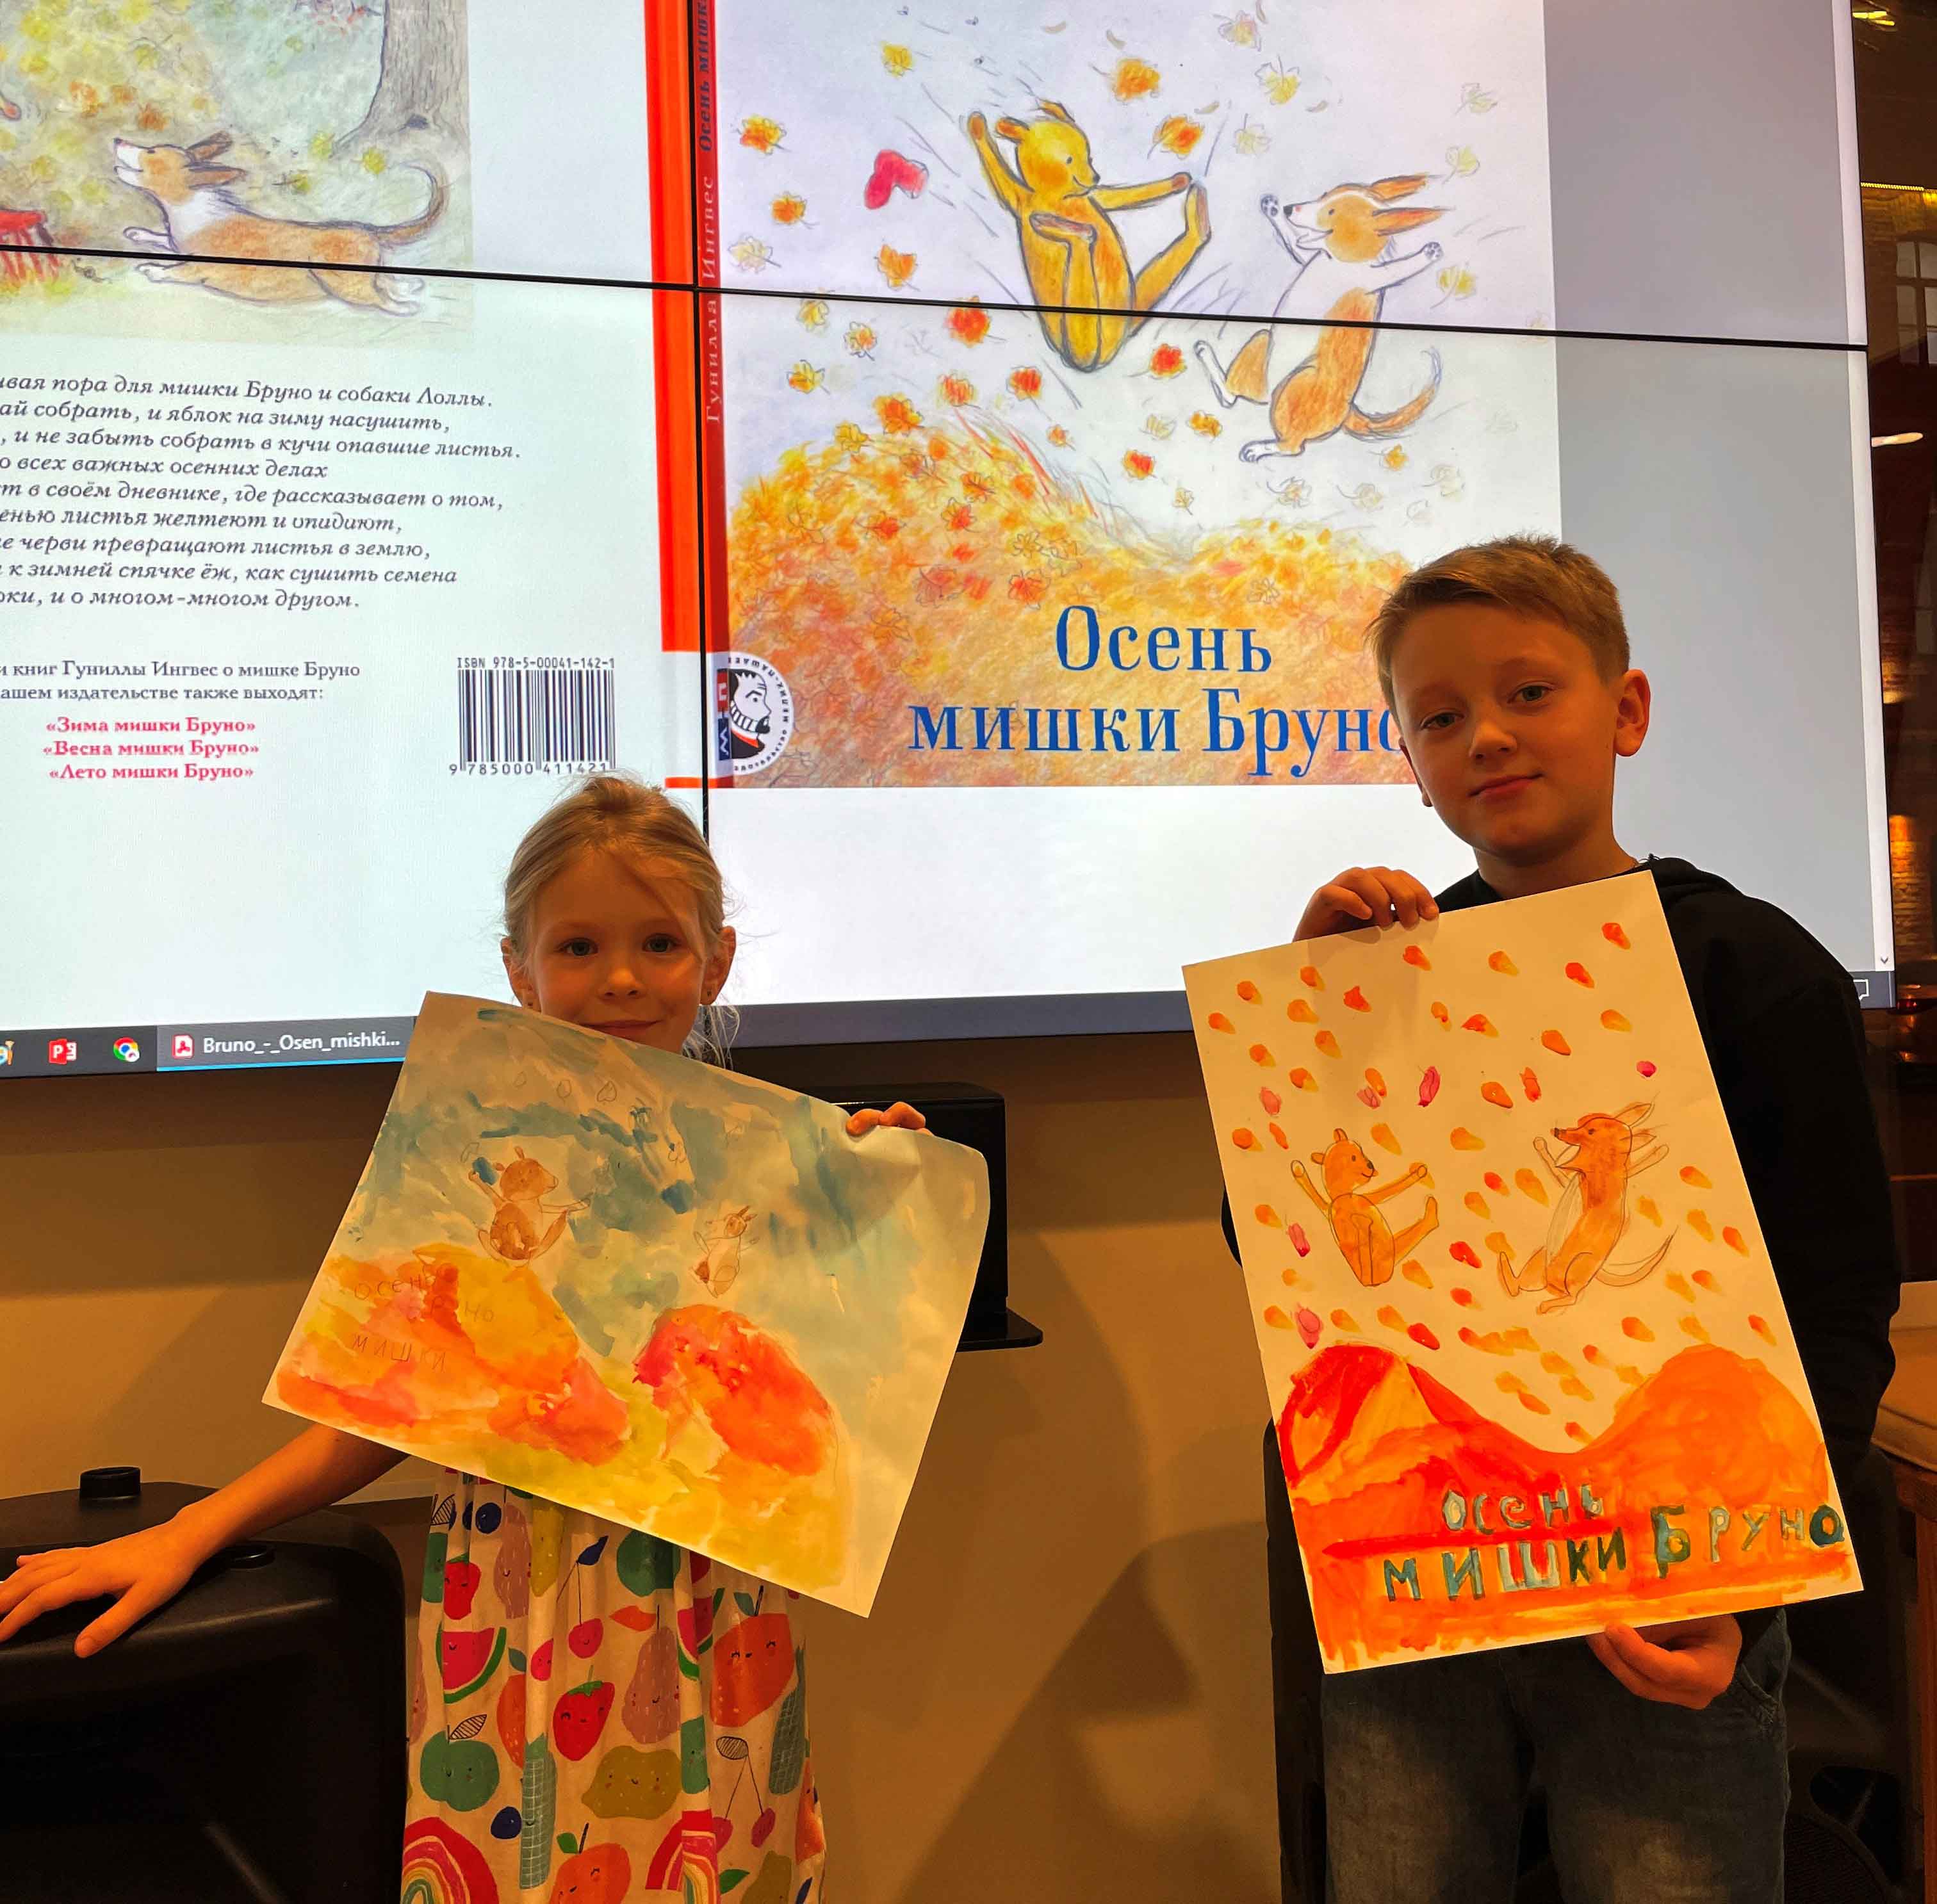 Осенних детских книг великое множество, но для занятия мы выбрали самую, на наш взгляд, уютную и атмосферную – «Осень мишки Бруно» Гуниллы Ингвес.